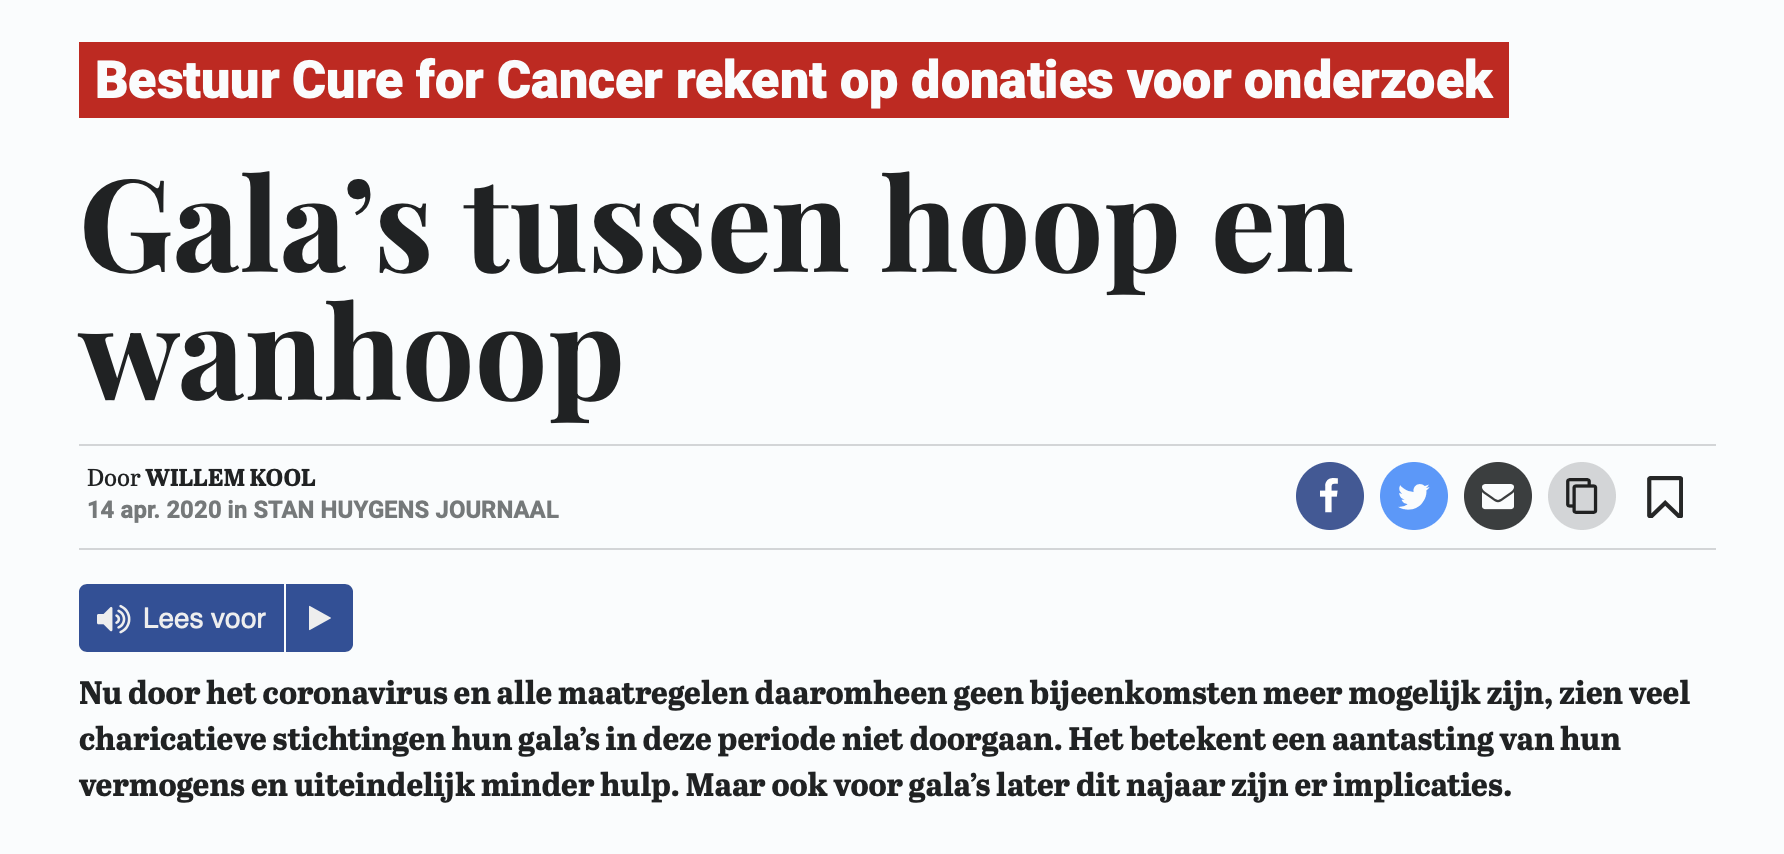 Marcel van den Heuvel Cure for Cancer gala